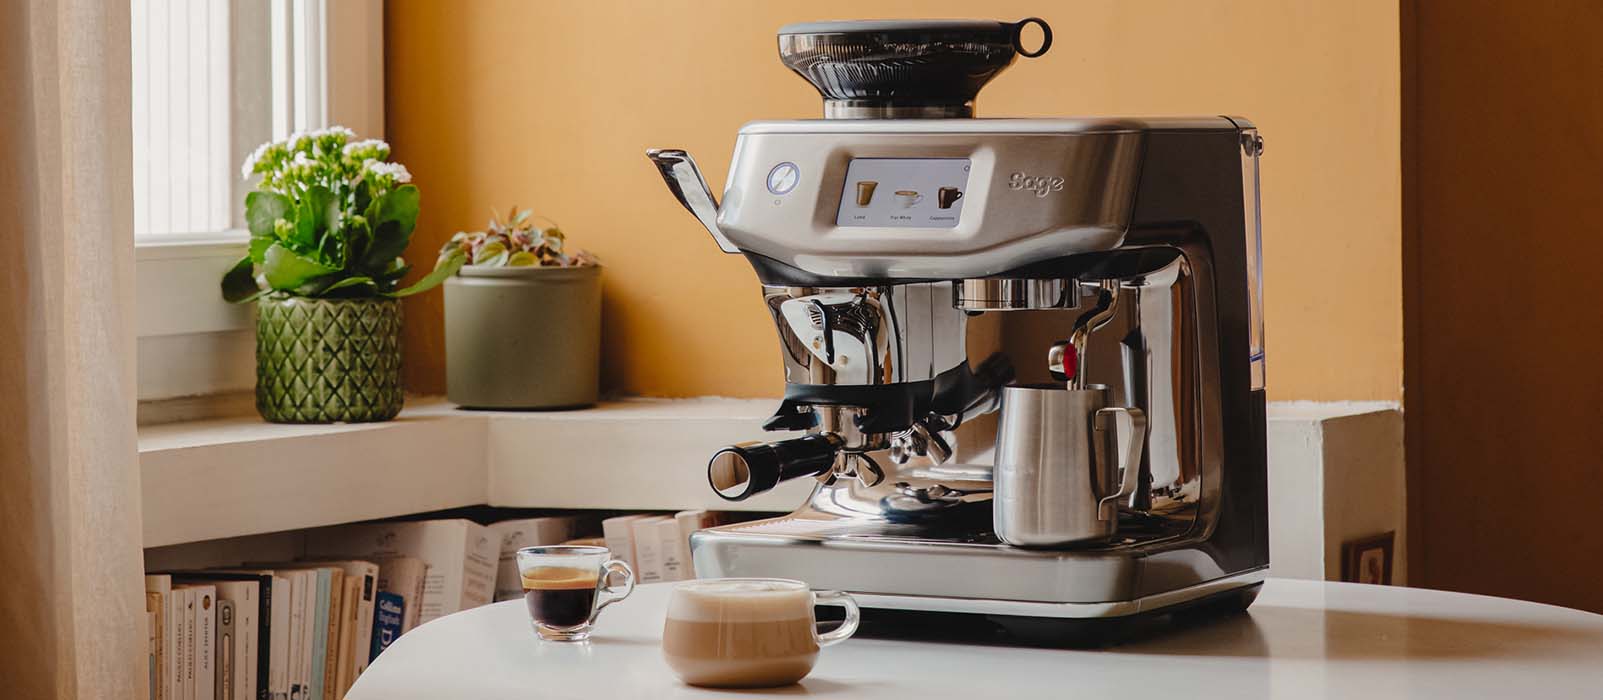 Comment utiliser du café déjà moulu sur une machine à café